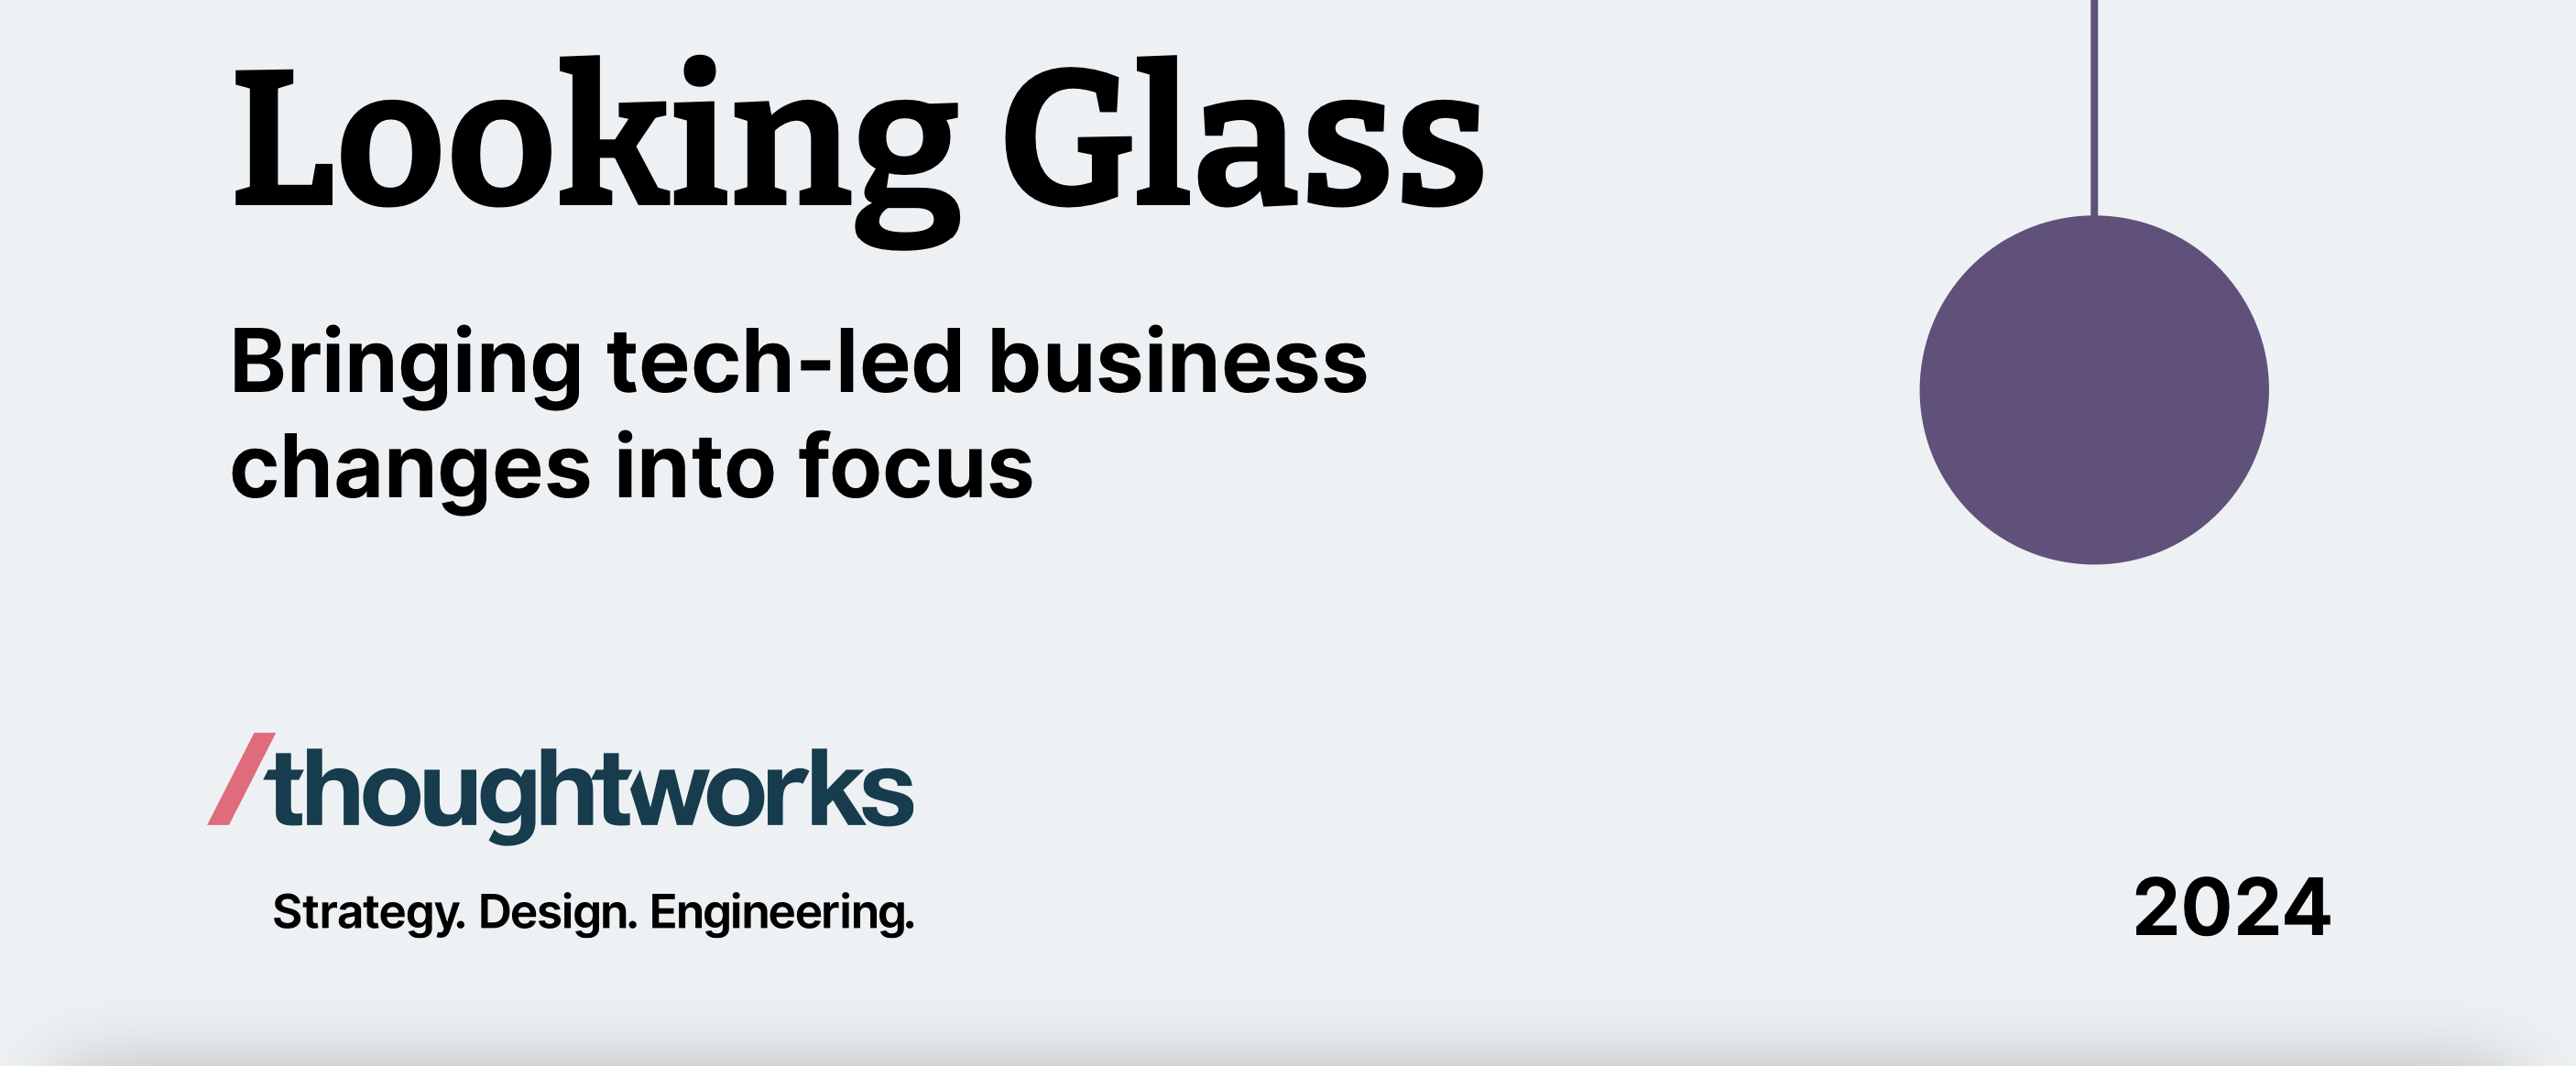 Thoughtworks lanceert vierde editie Looking Glass